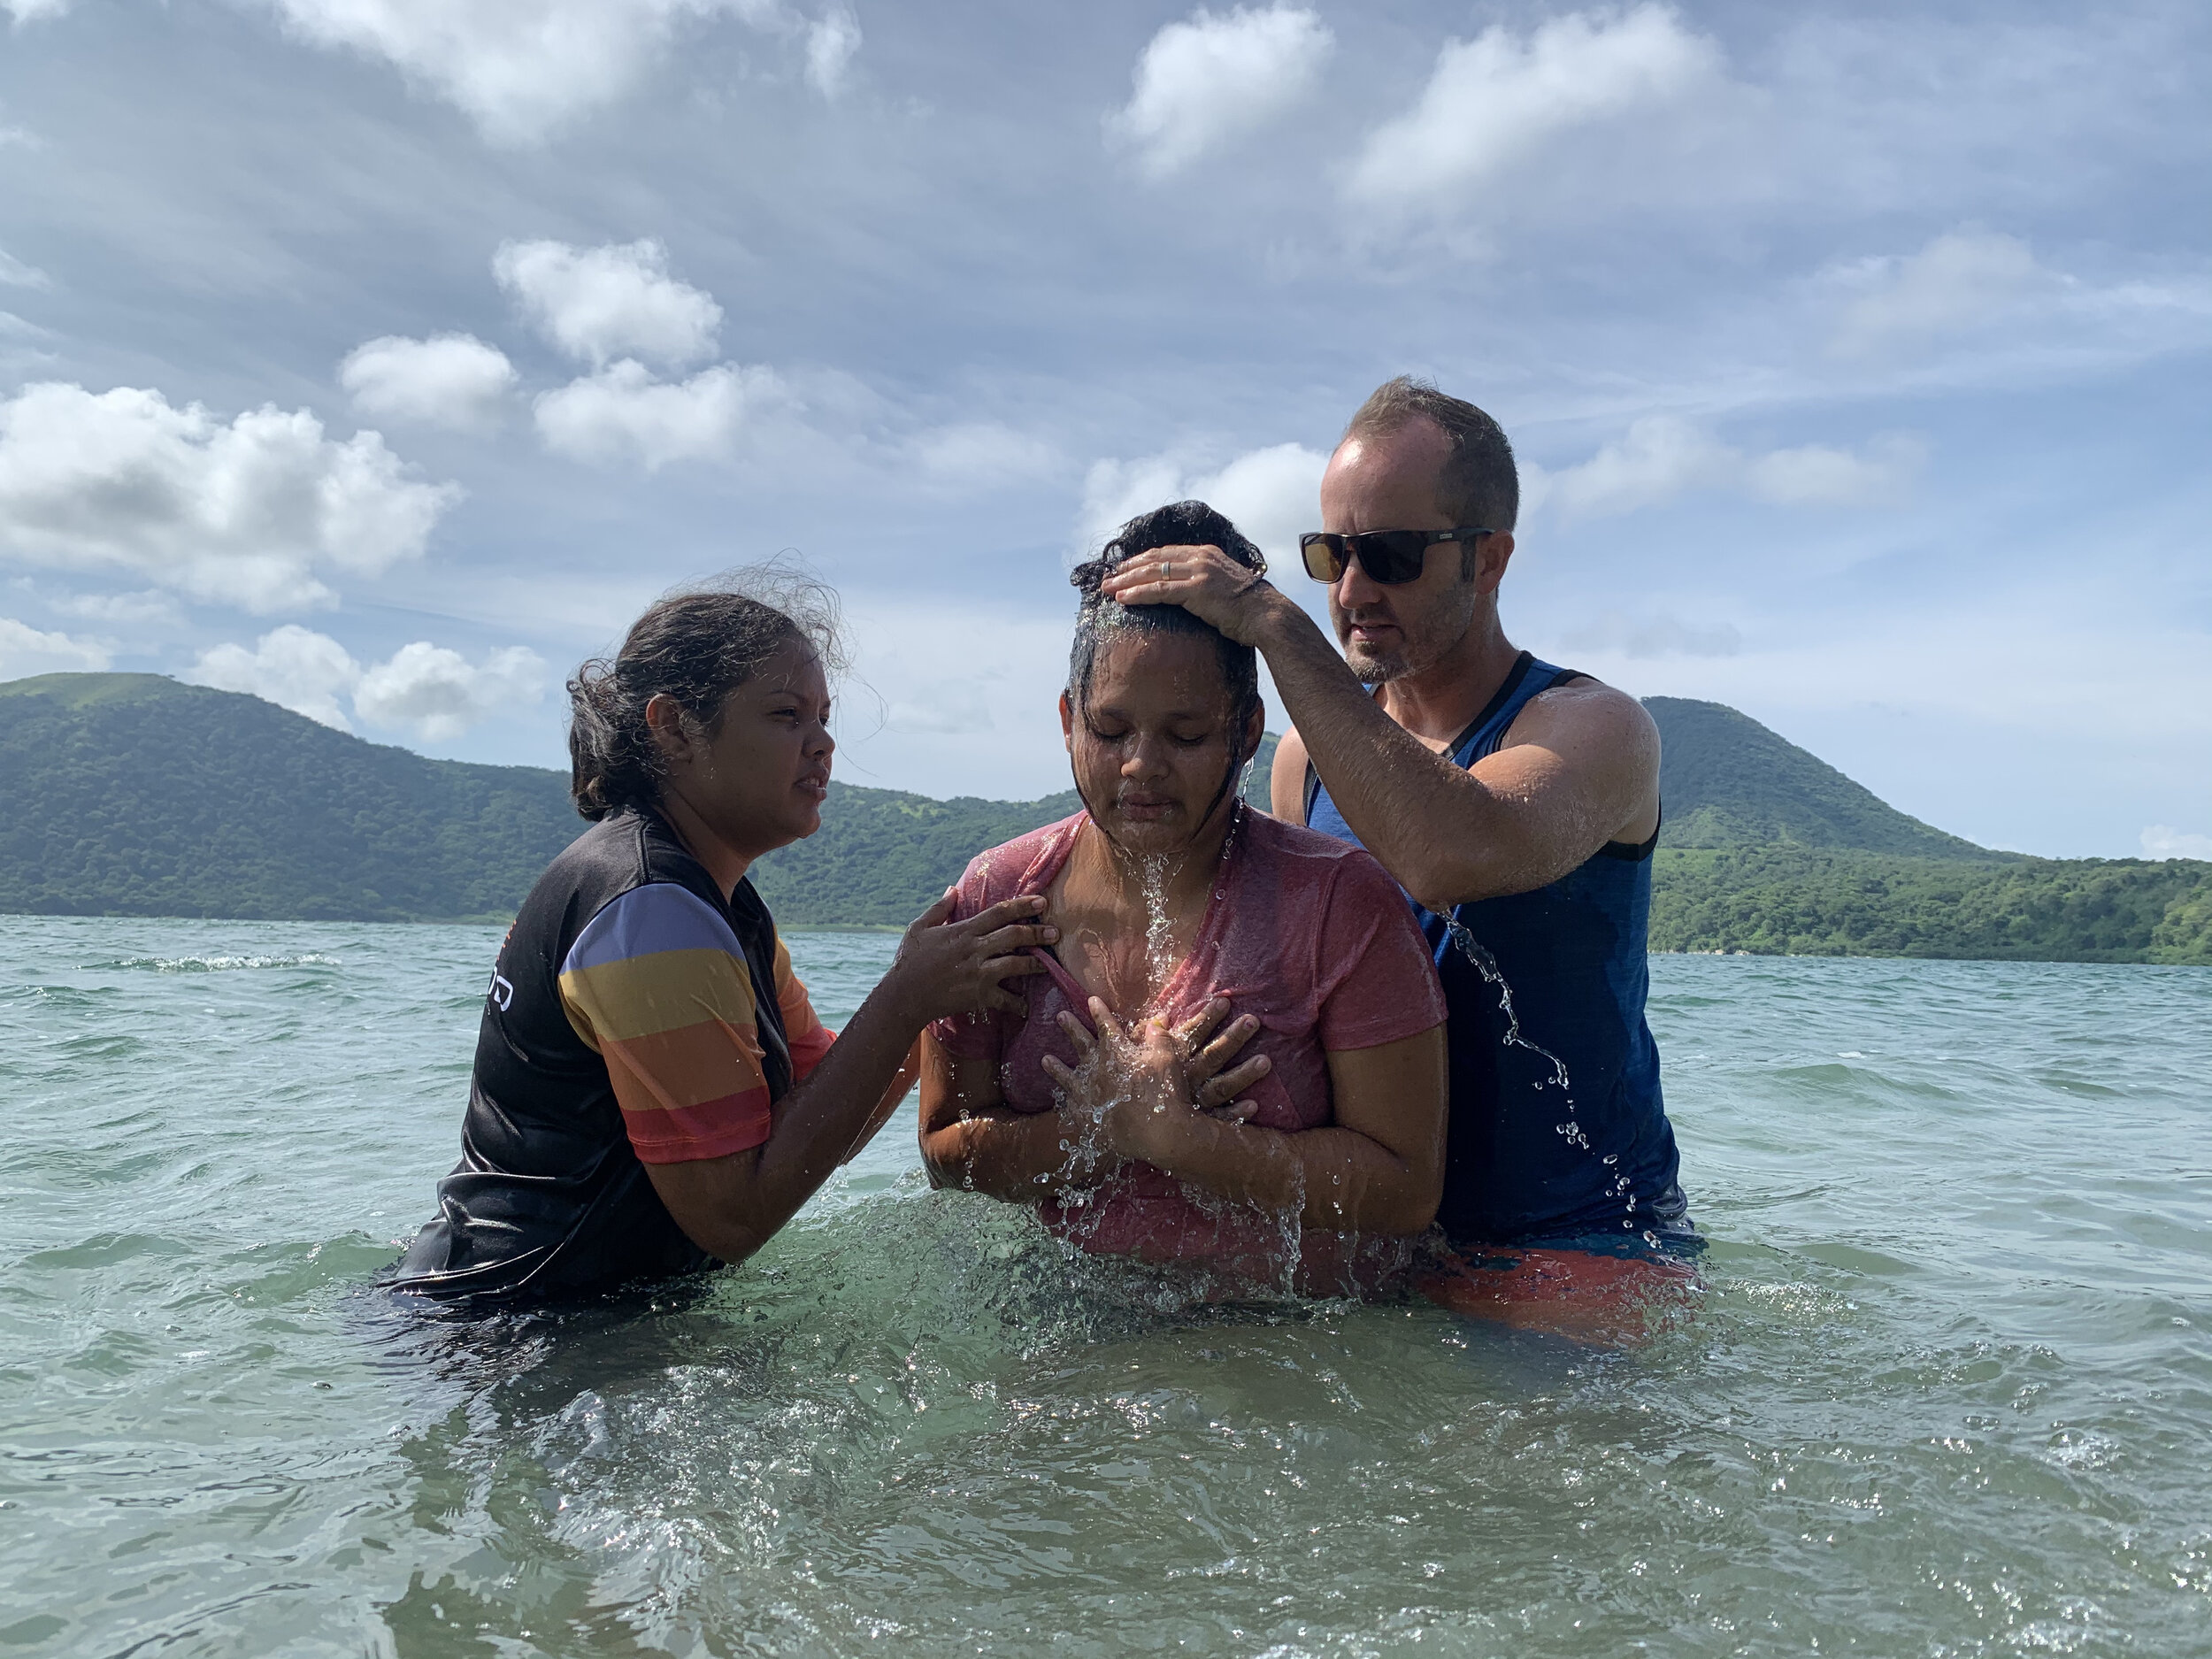 Josefa being baptized